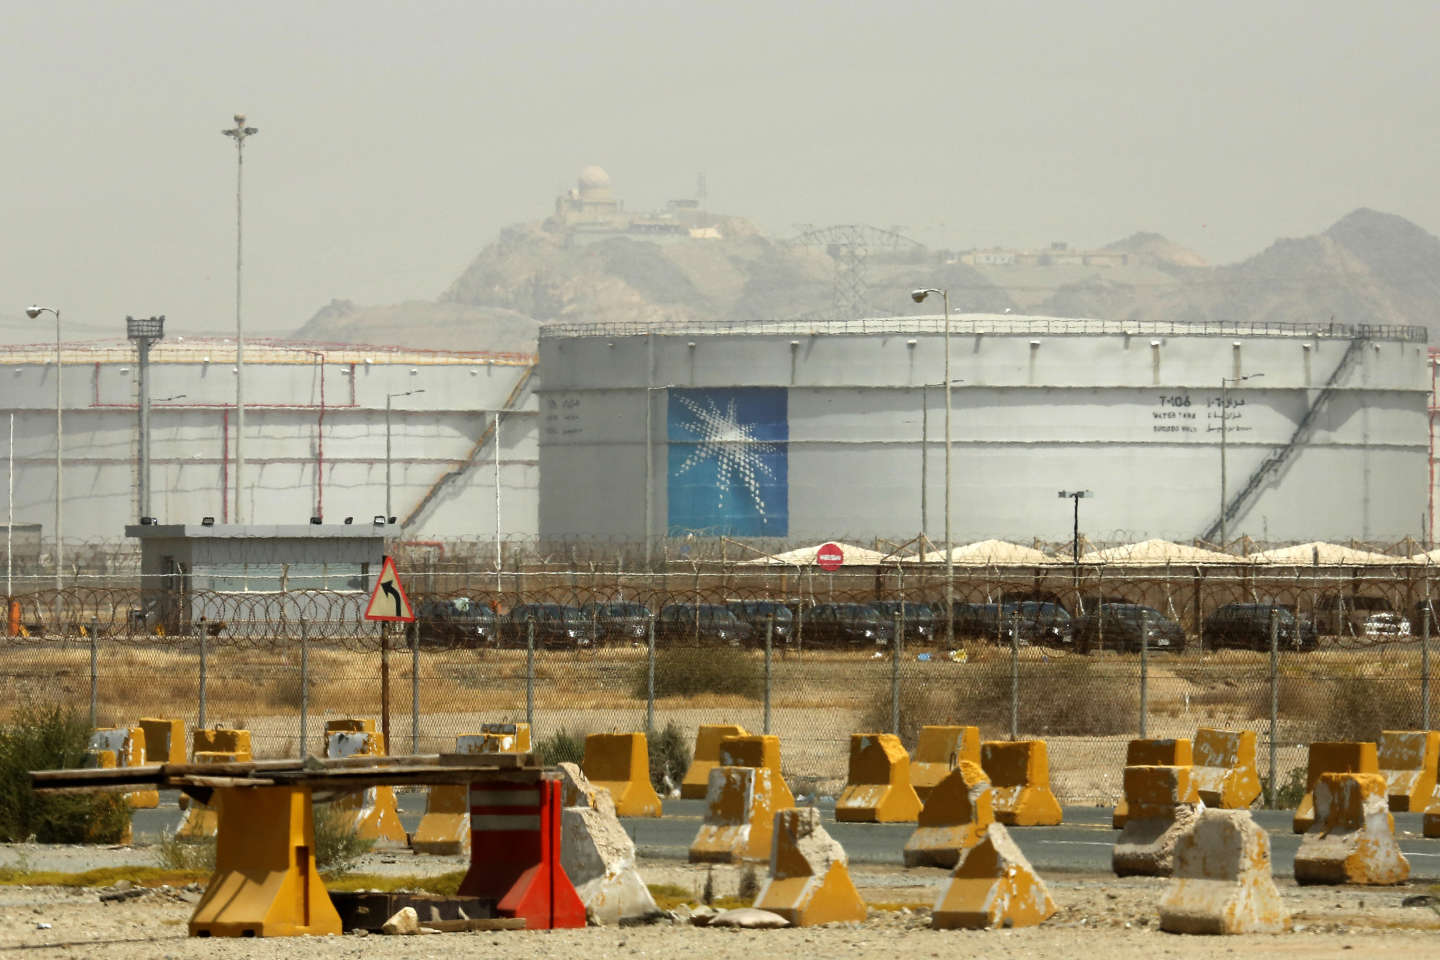 Des experts de l’ONU interpellent Saudi Aramco sur les conséquences de son activité sur l’environnement